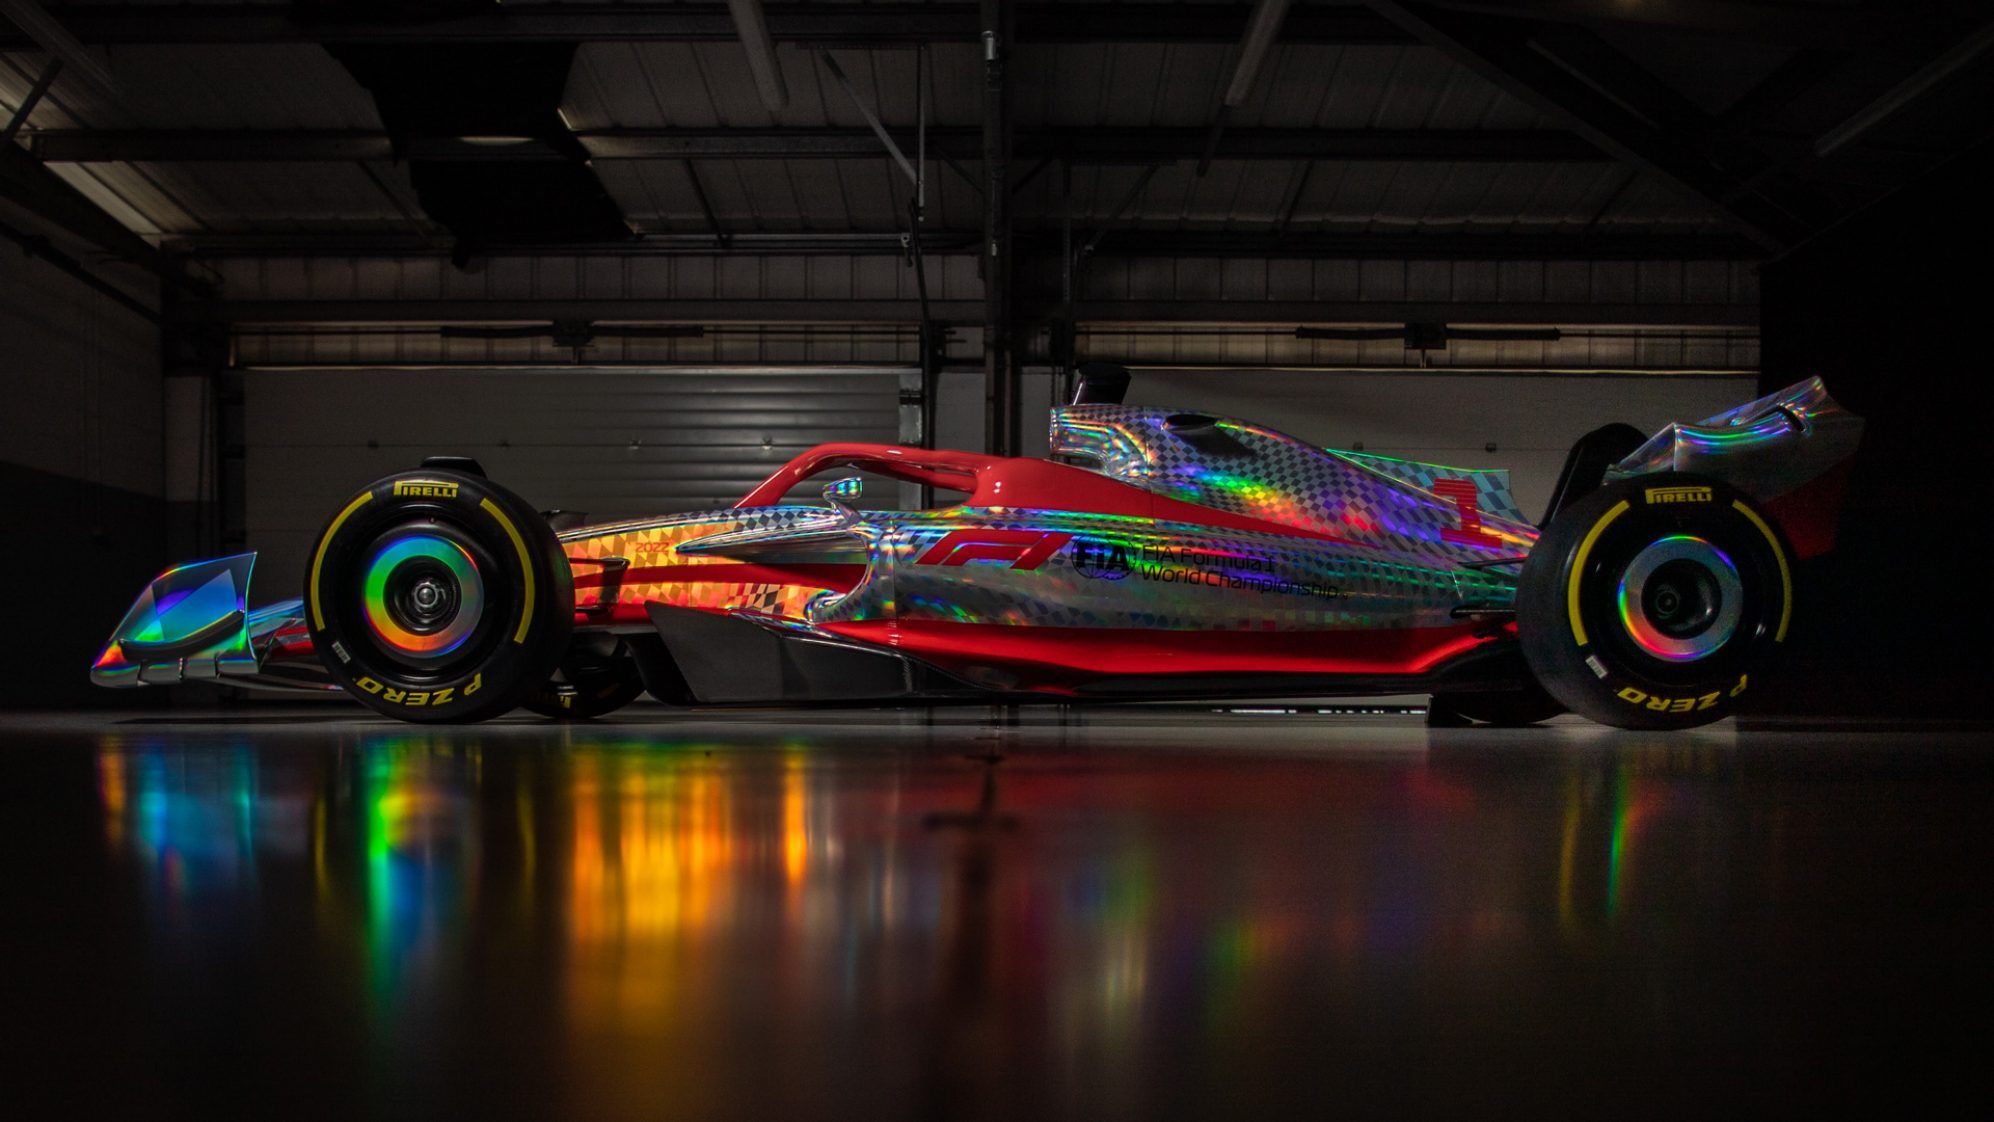 Futurista y espectacular: la F1 presenta el prototipo de 2022 